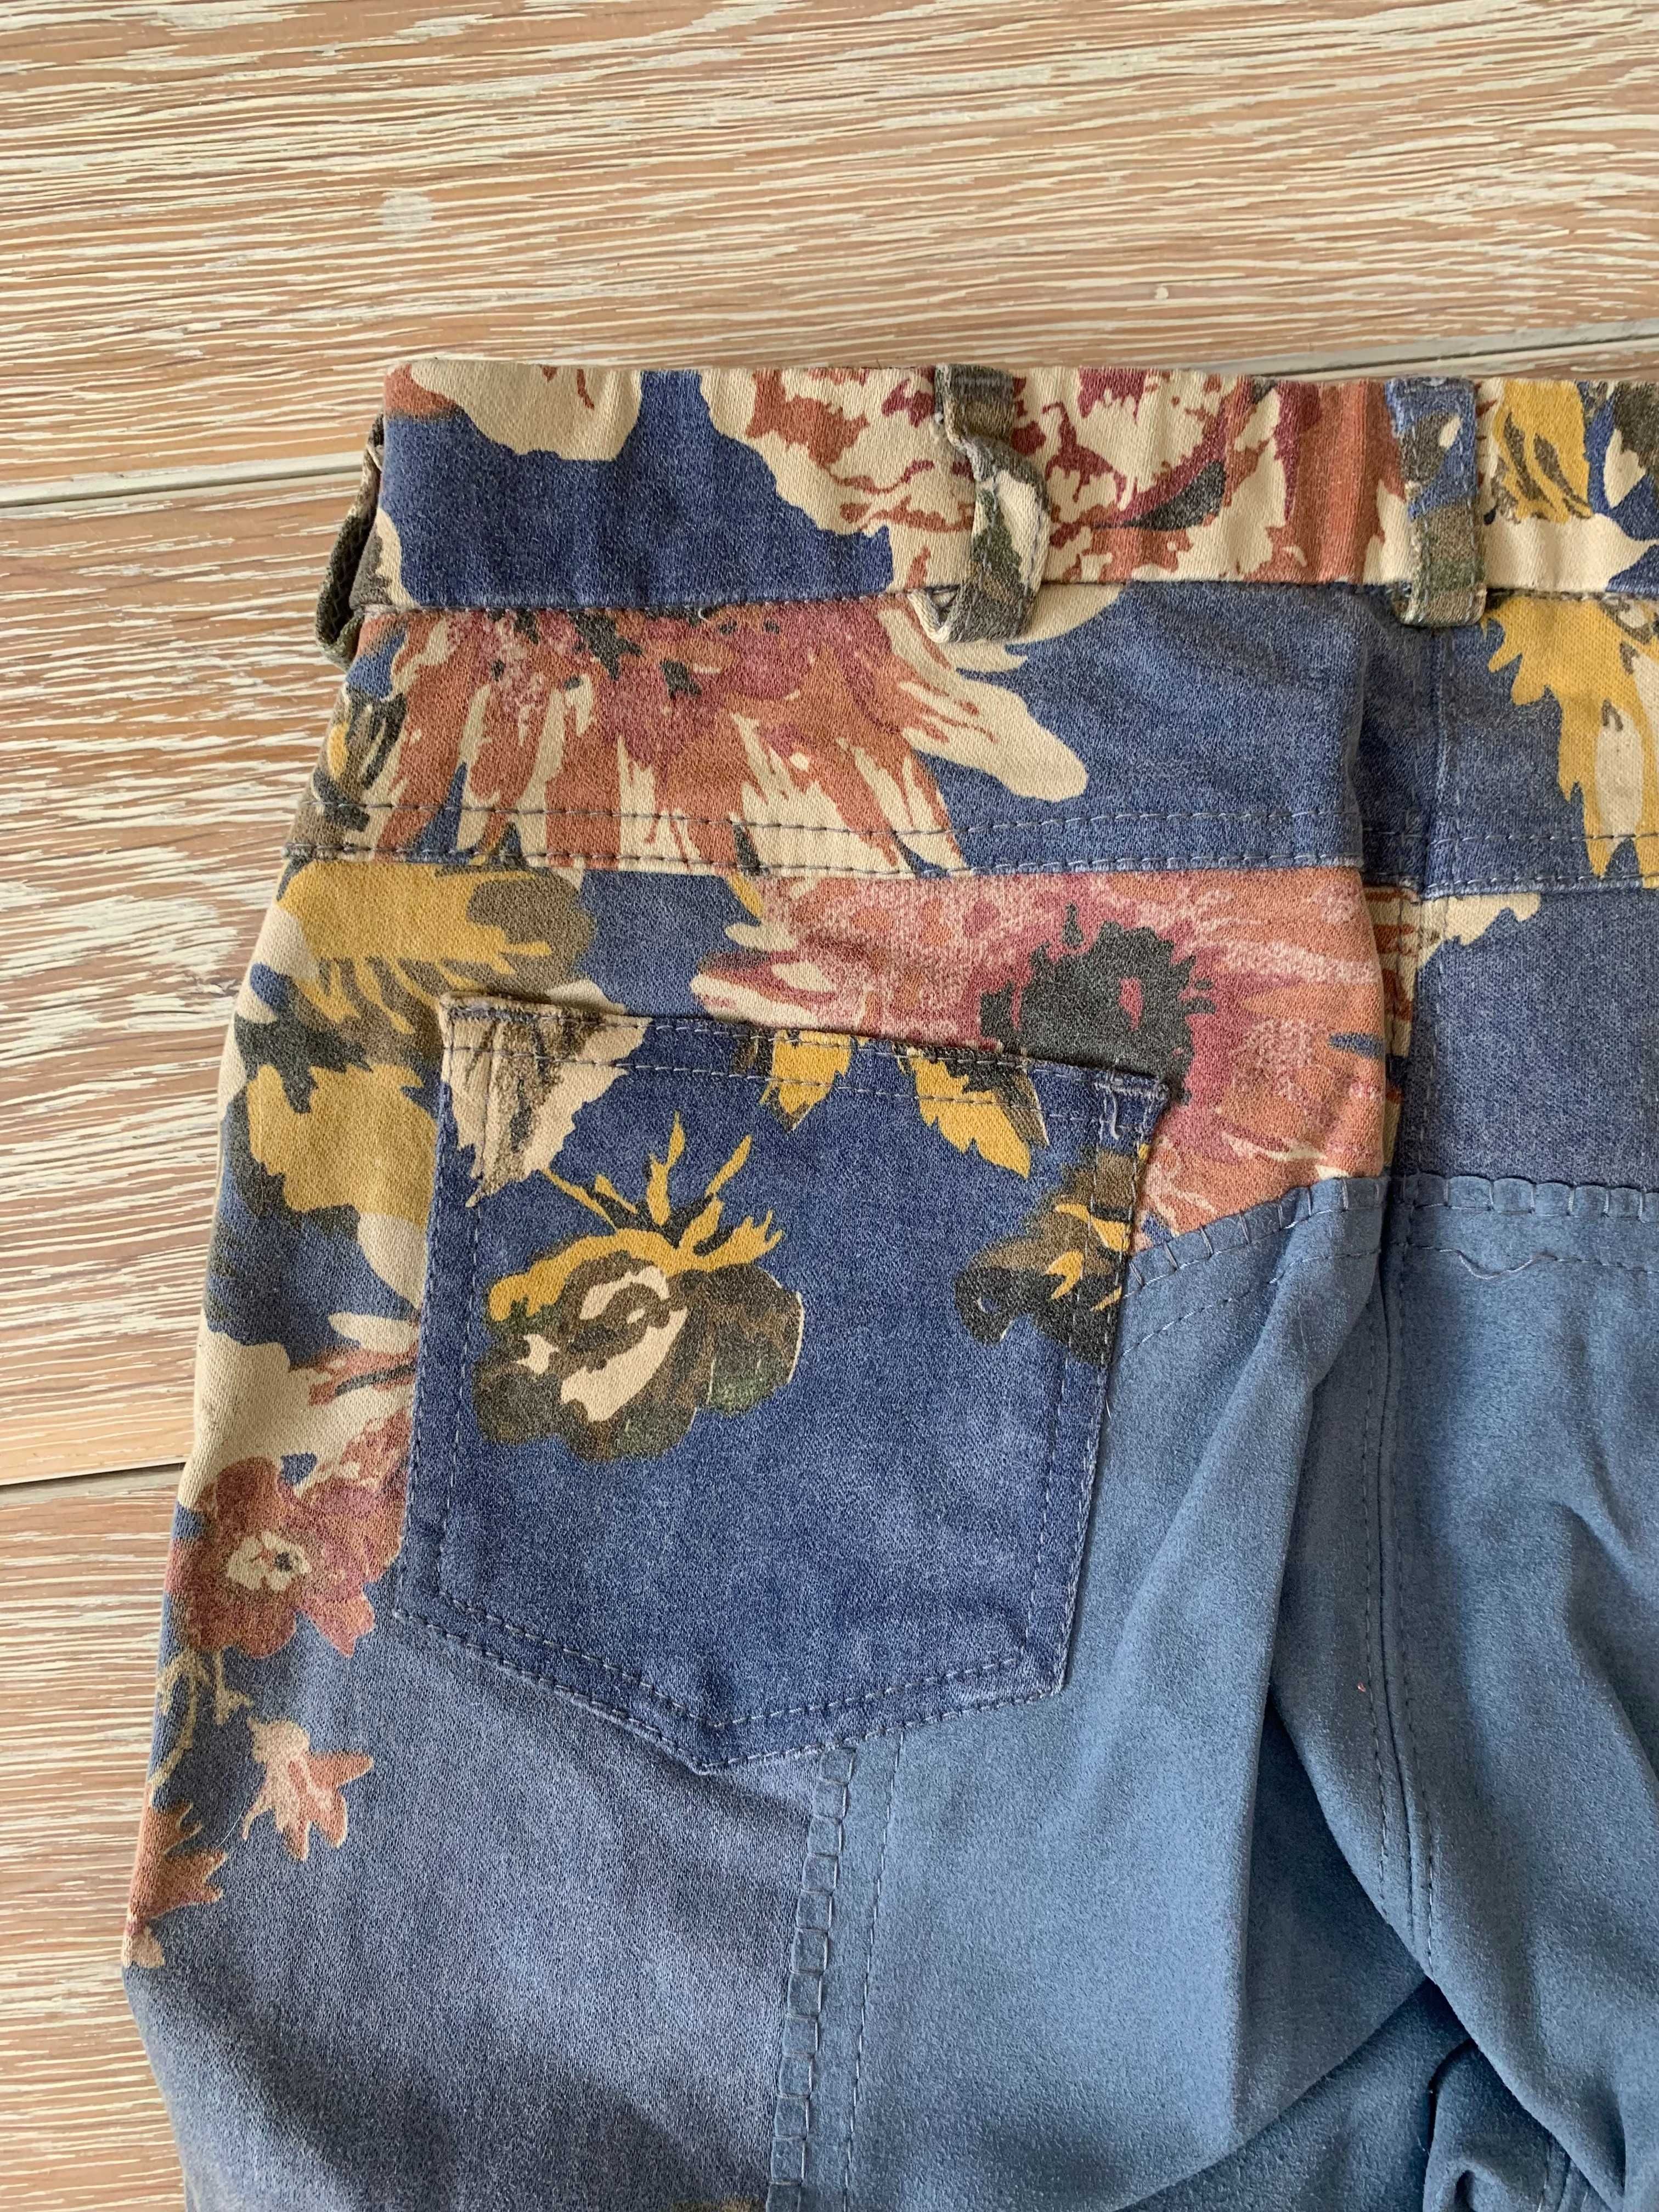 Bryczesy Cavallino Marino jeansowe w kwiaty r. 36